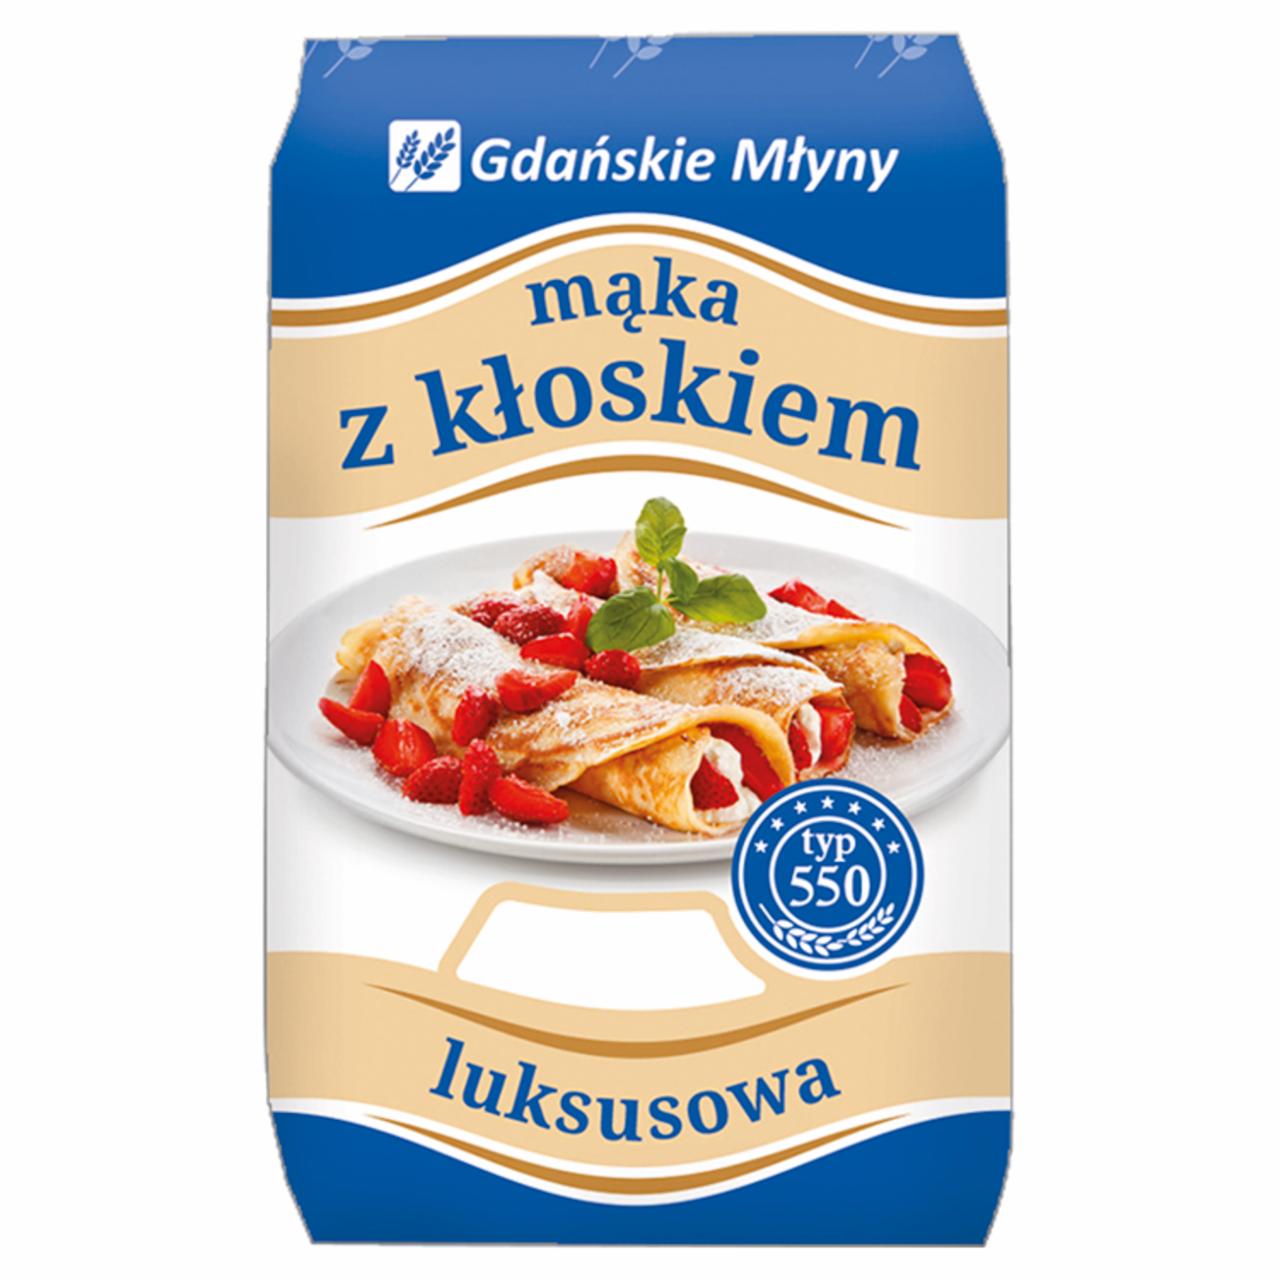 Zdjęcia - Gdańskie Młyny Mąka z kłoskiem Mąka pszenna luksusowa typ 550 1 kg